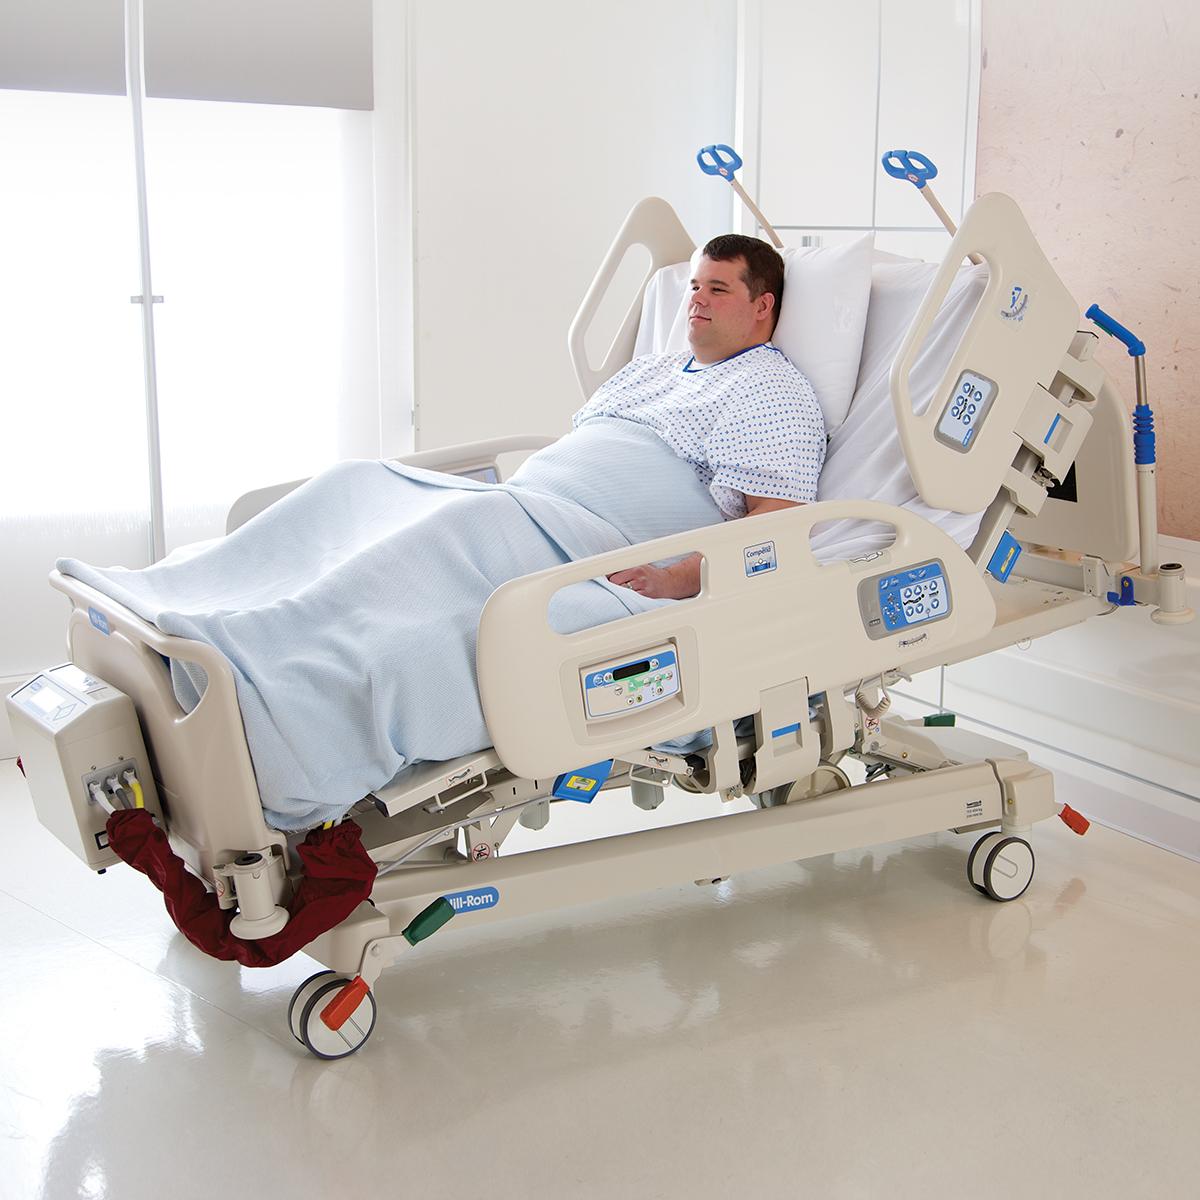 La función FlexAfoot permite alargar la cama bariátrica Compella con rapidez para que se adapte a pacientes más altos.